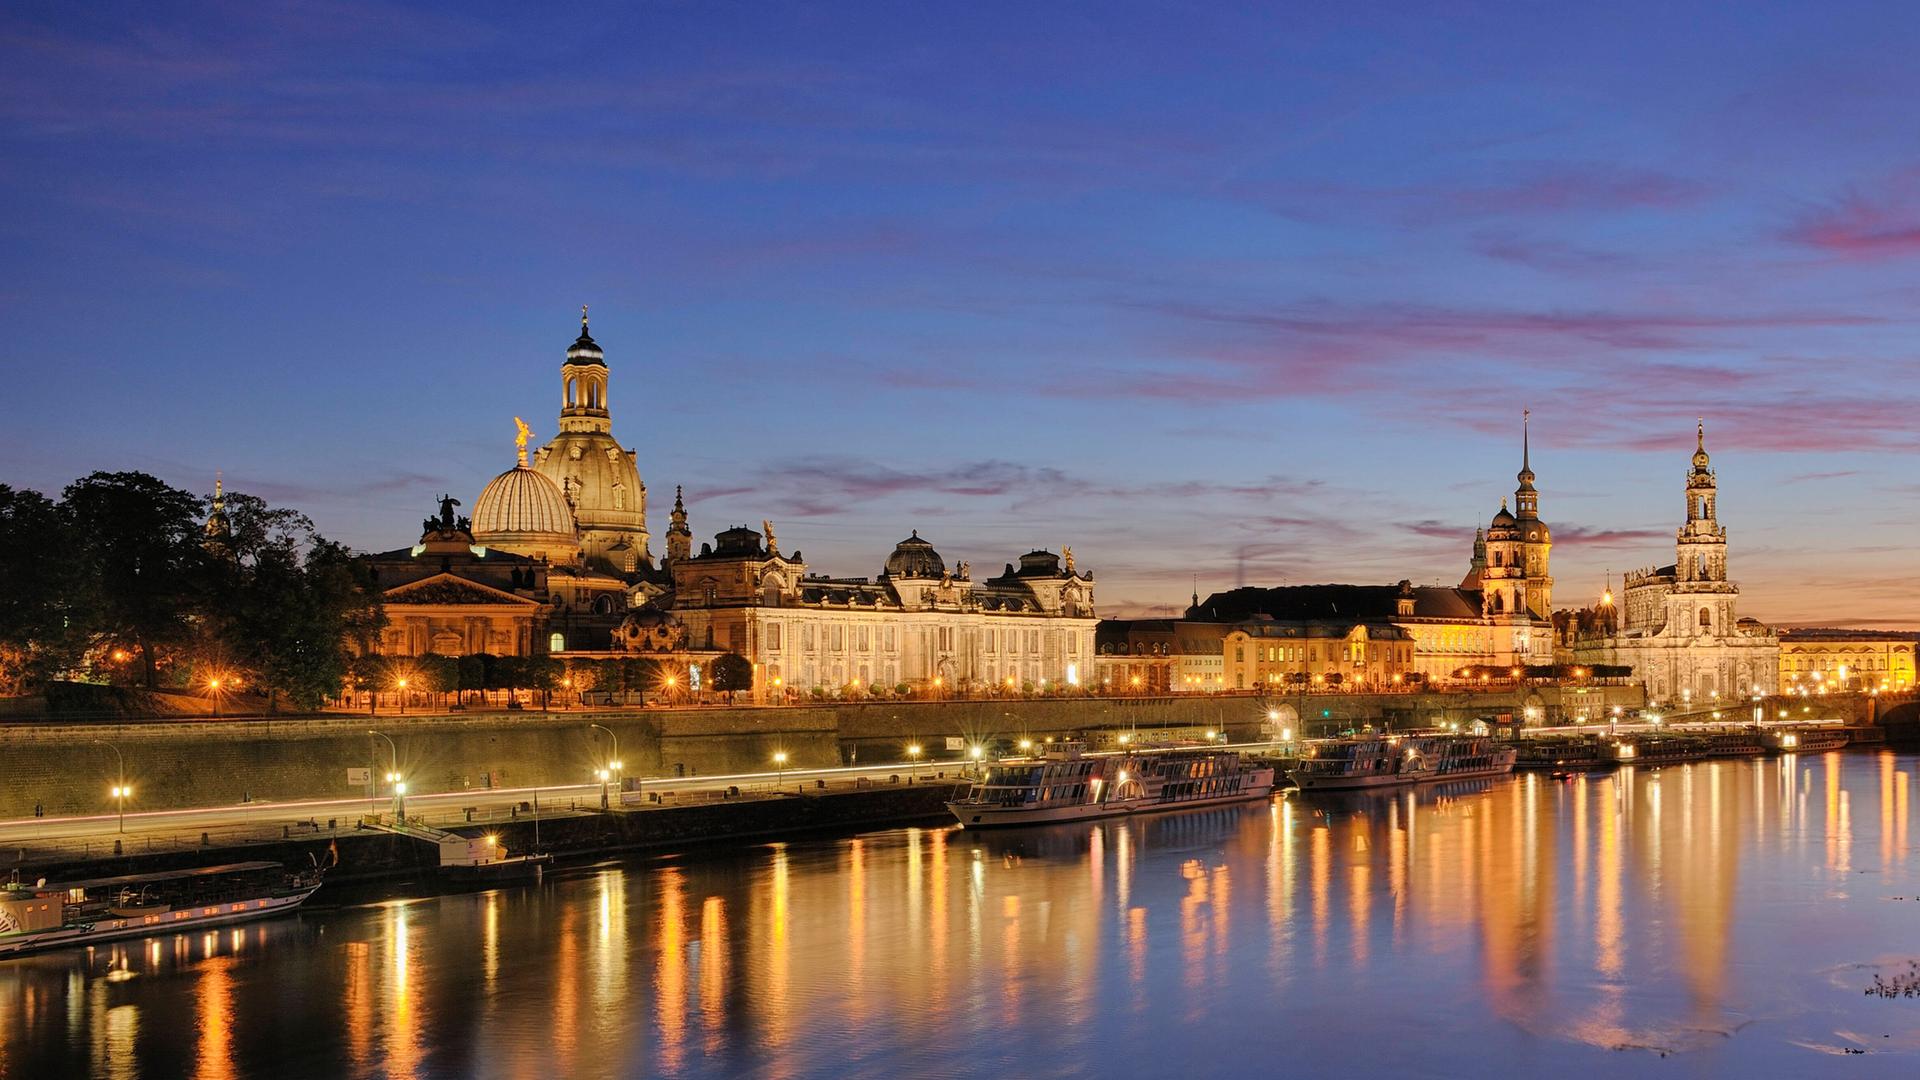 Eine blau-rosa gefärbter Himmel liegt über der Dresdner Stadtkulisse, die man angestrahlt über den Fluß hinweg erblickt.